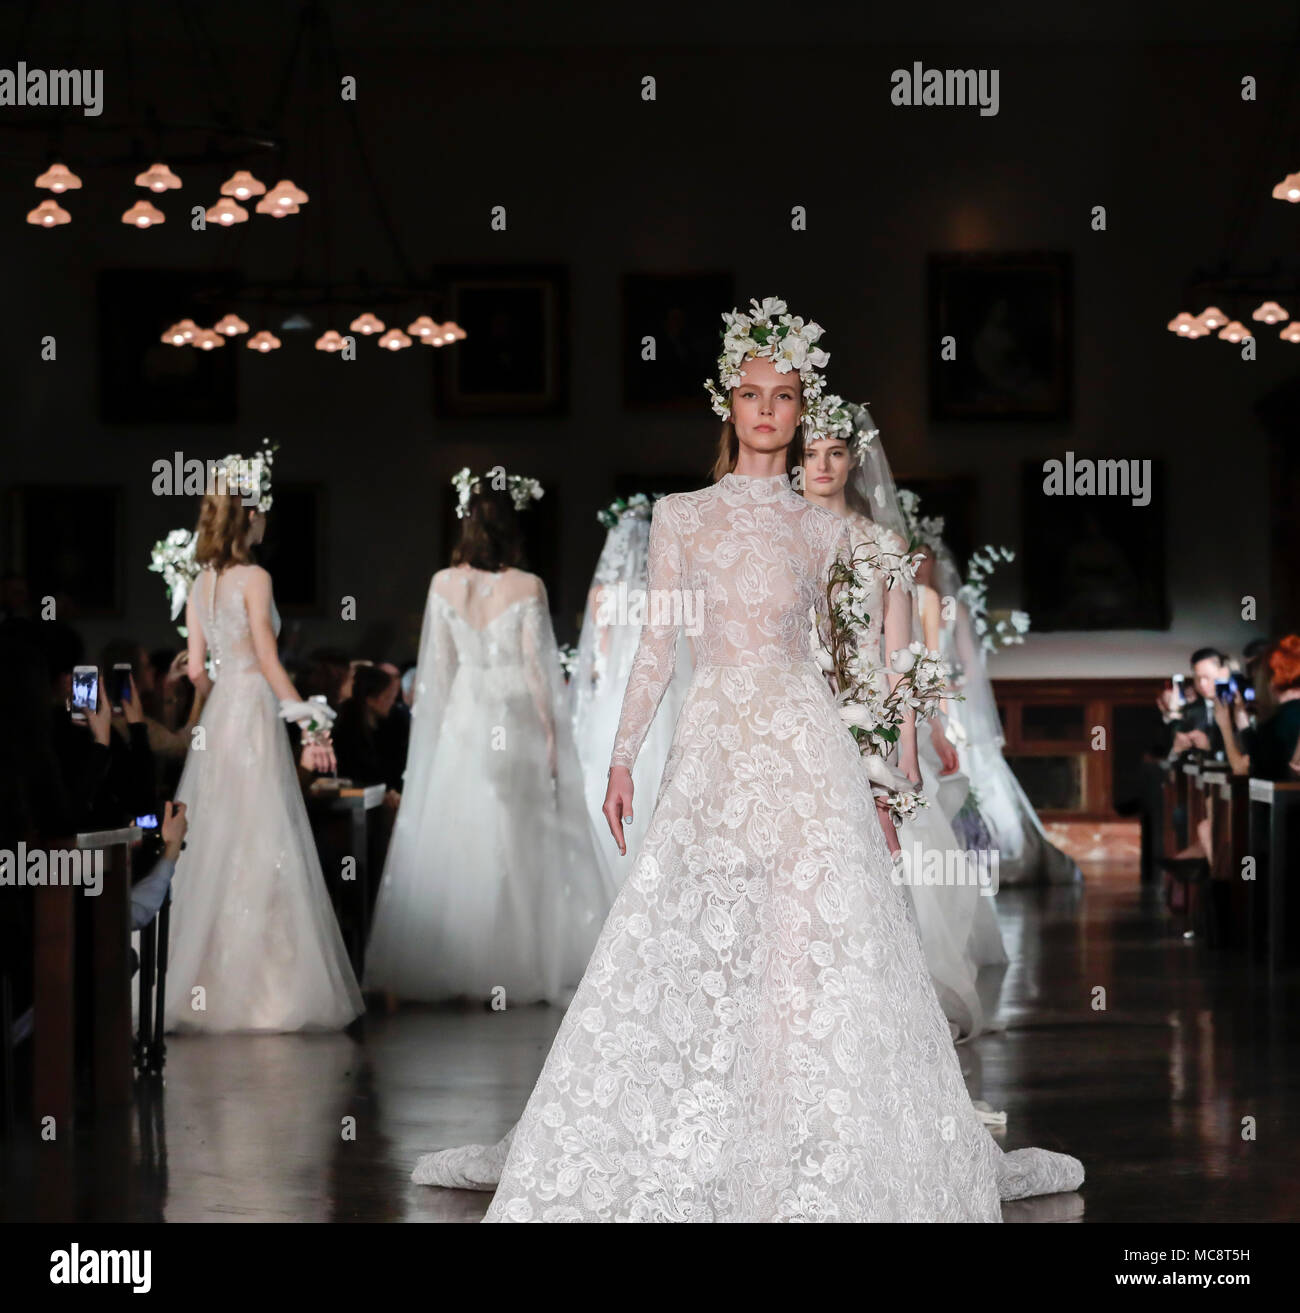 New York, NY, USA - April 12, 2018: Models walk runway for Reem Acra Bridal Spring/Summer 2019 collection during NY Bridal Wweek at NY Public Library, Stock Photo